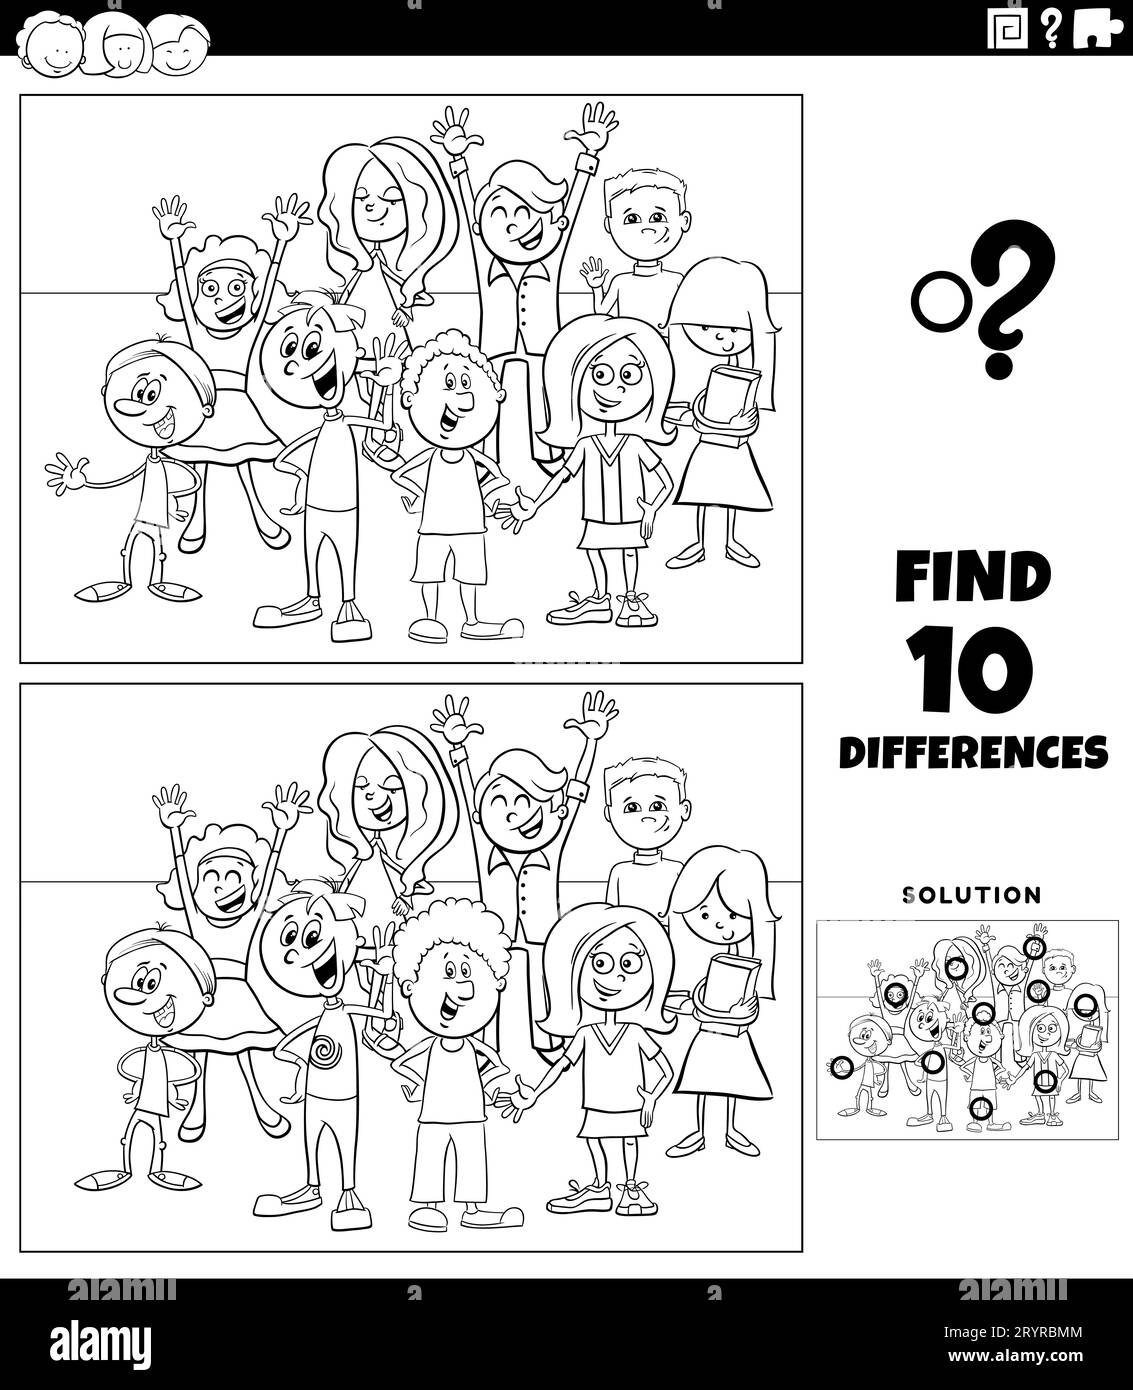 Dessin animé noir et blanc illustration de trouver les différences entre les images jeu éducatif avec enfants ou adolescents caractères groupe de coloriage Banque D'Images